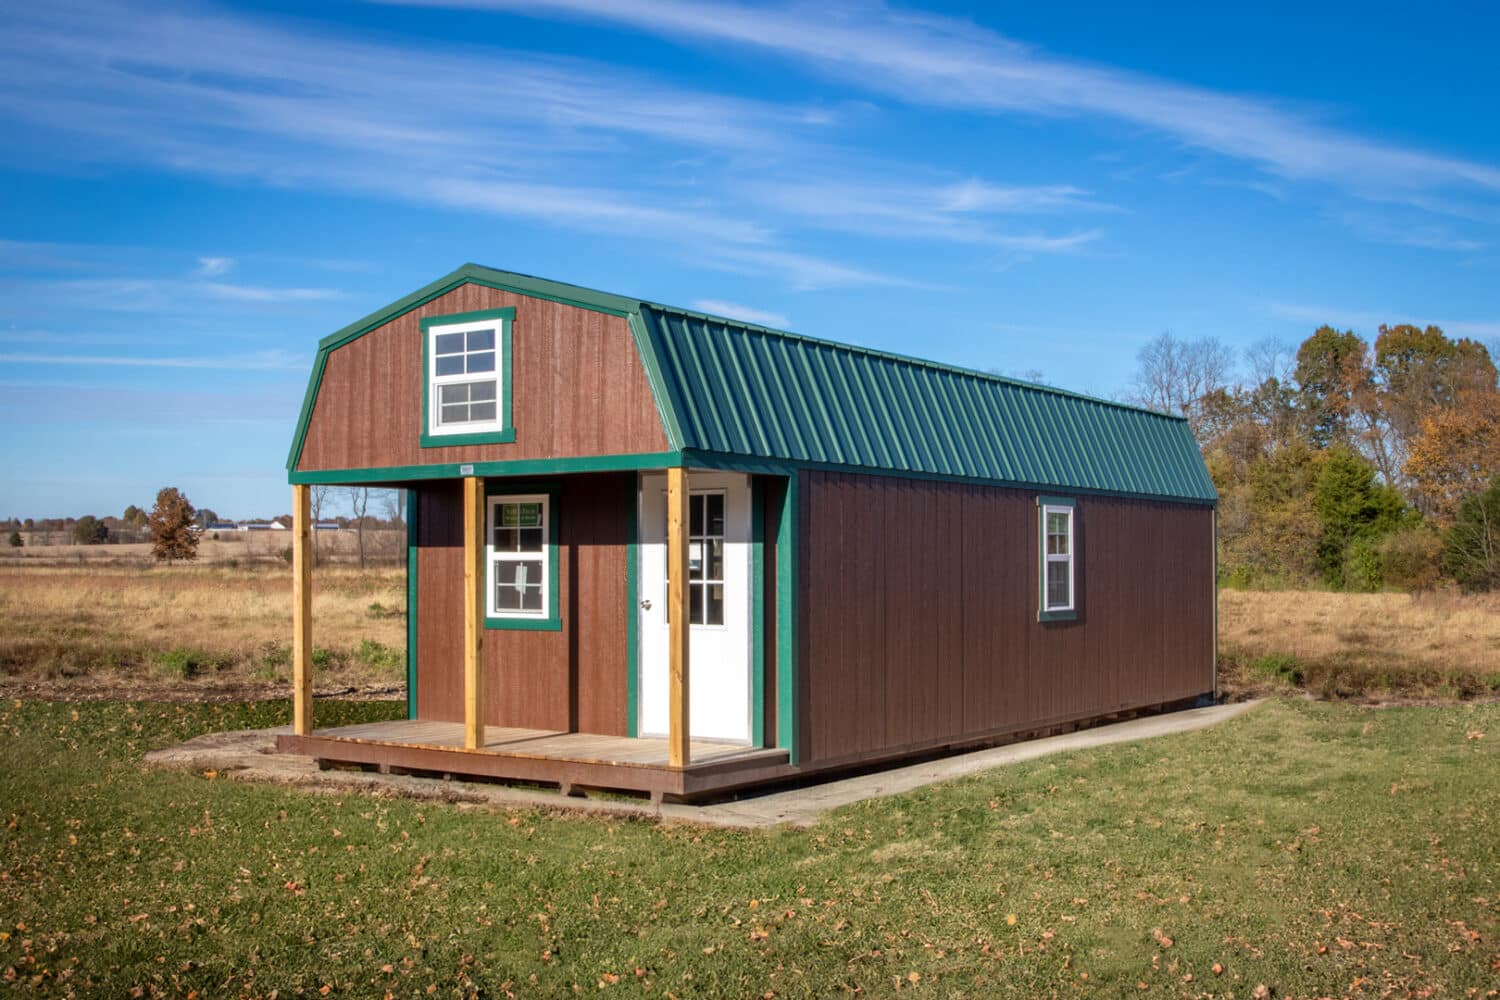 prebuilt cabins for storage in kingdom city mo